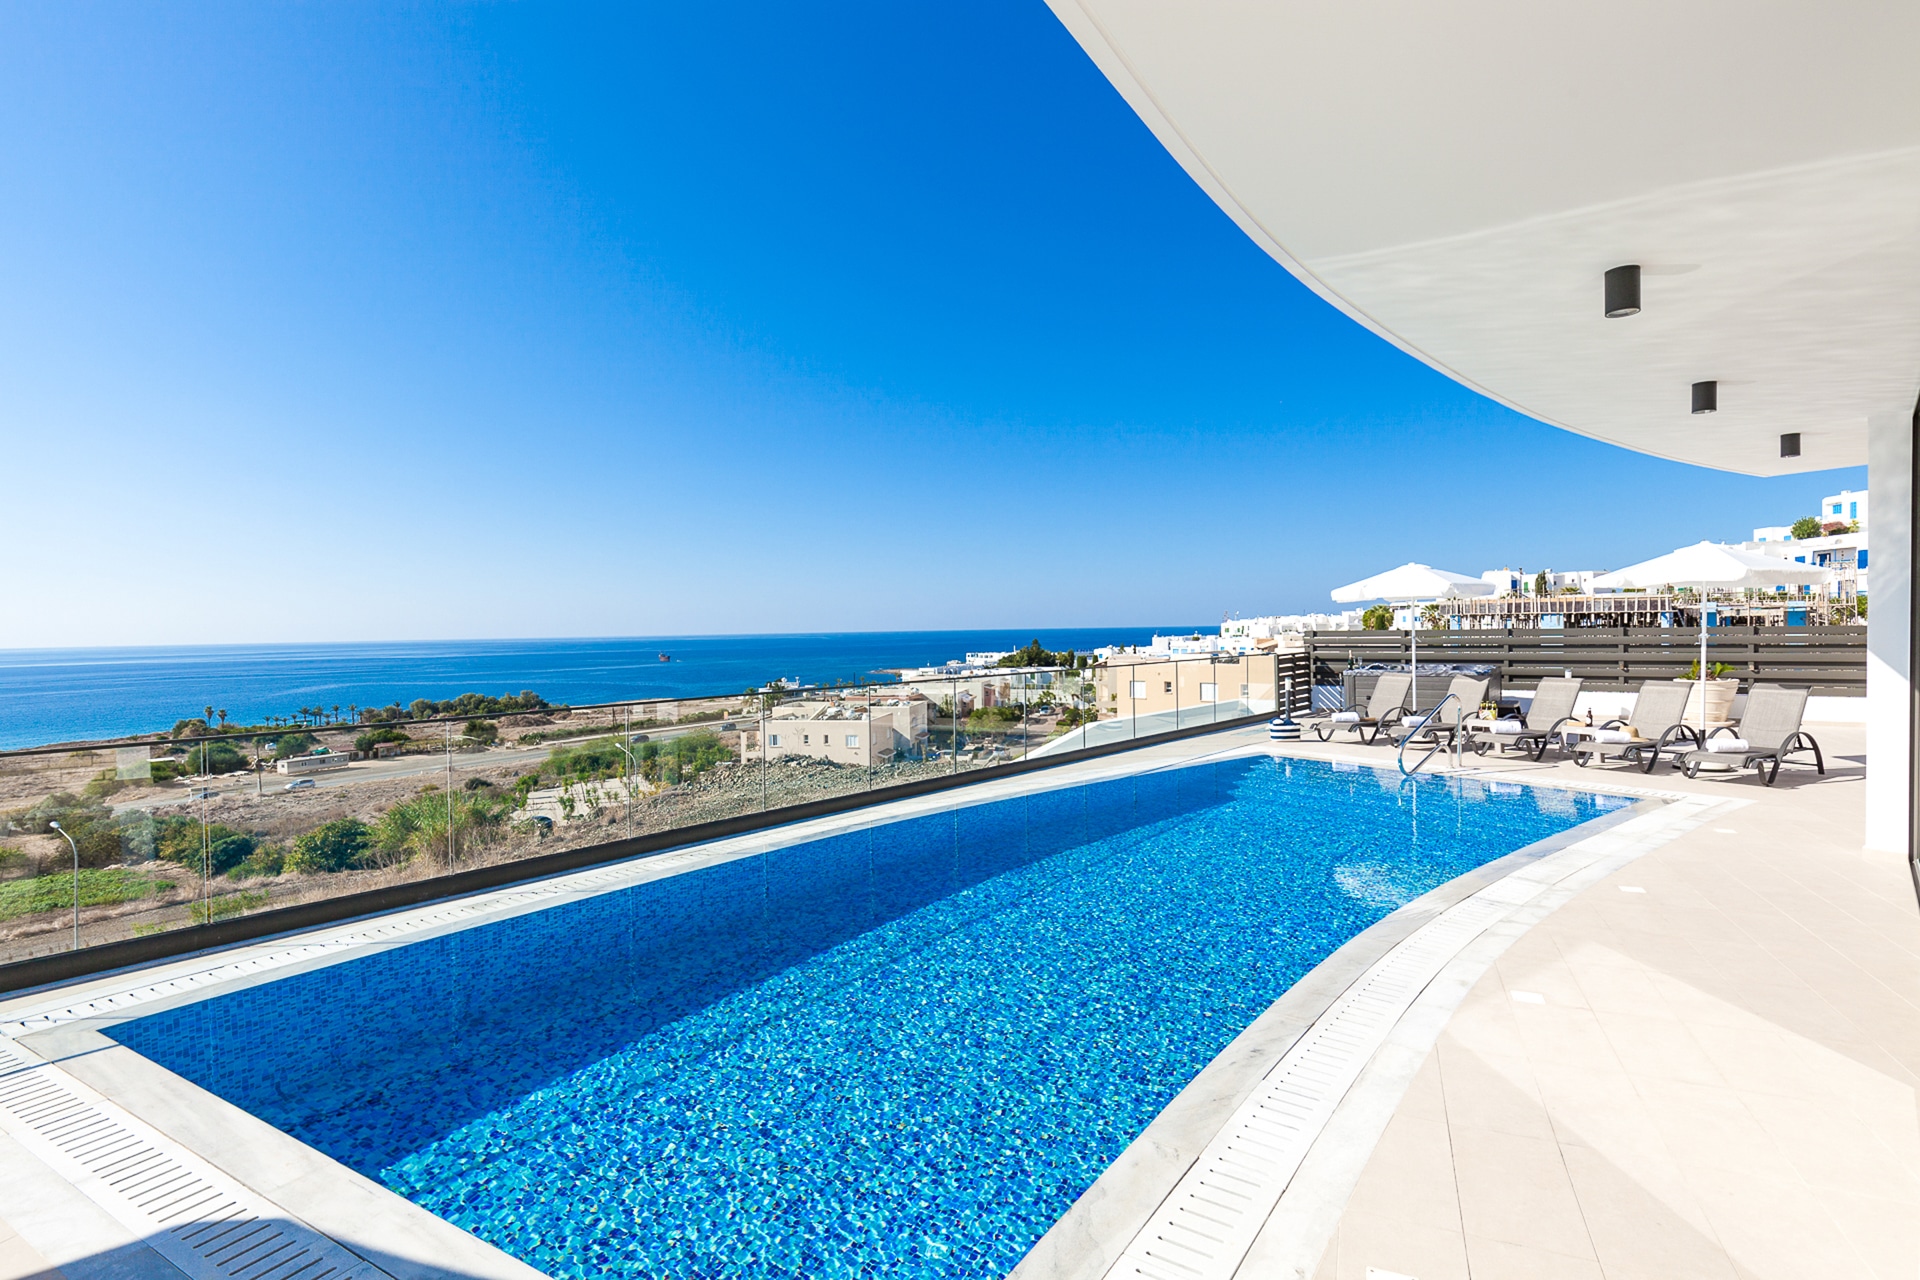 Villa Ocean View - Incredible Luxury Villa in Cyprus With Ocean Views